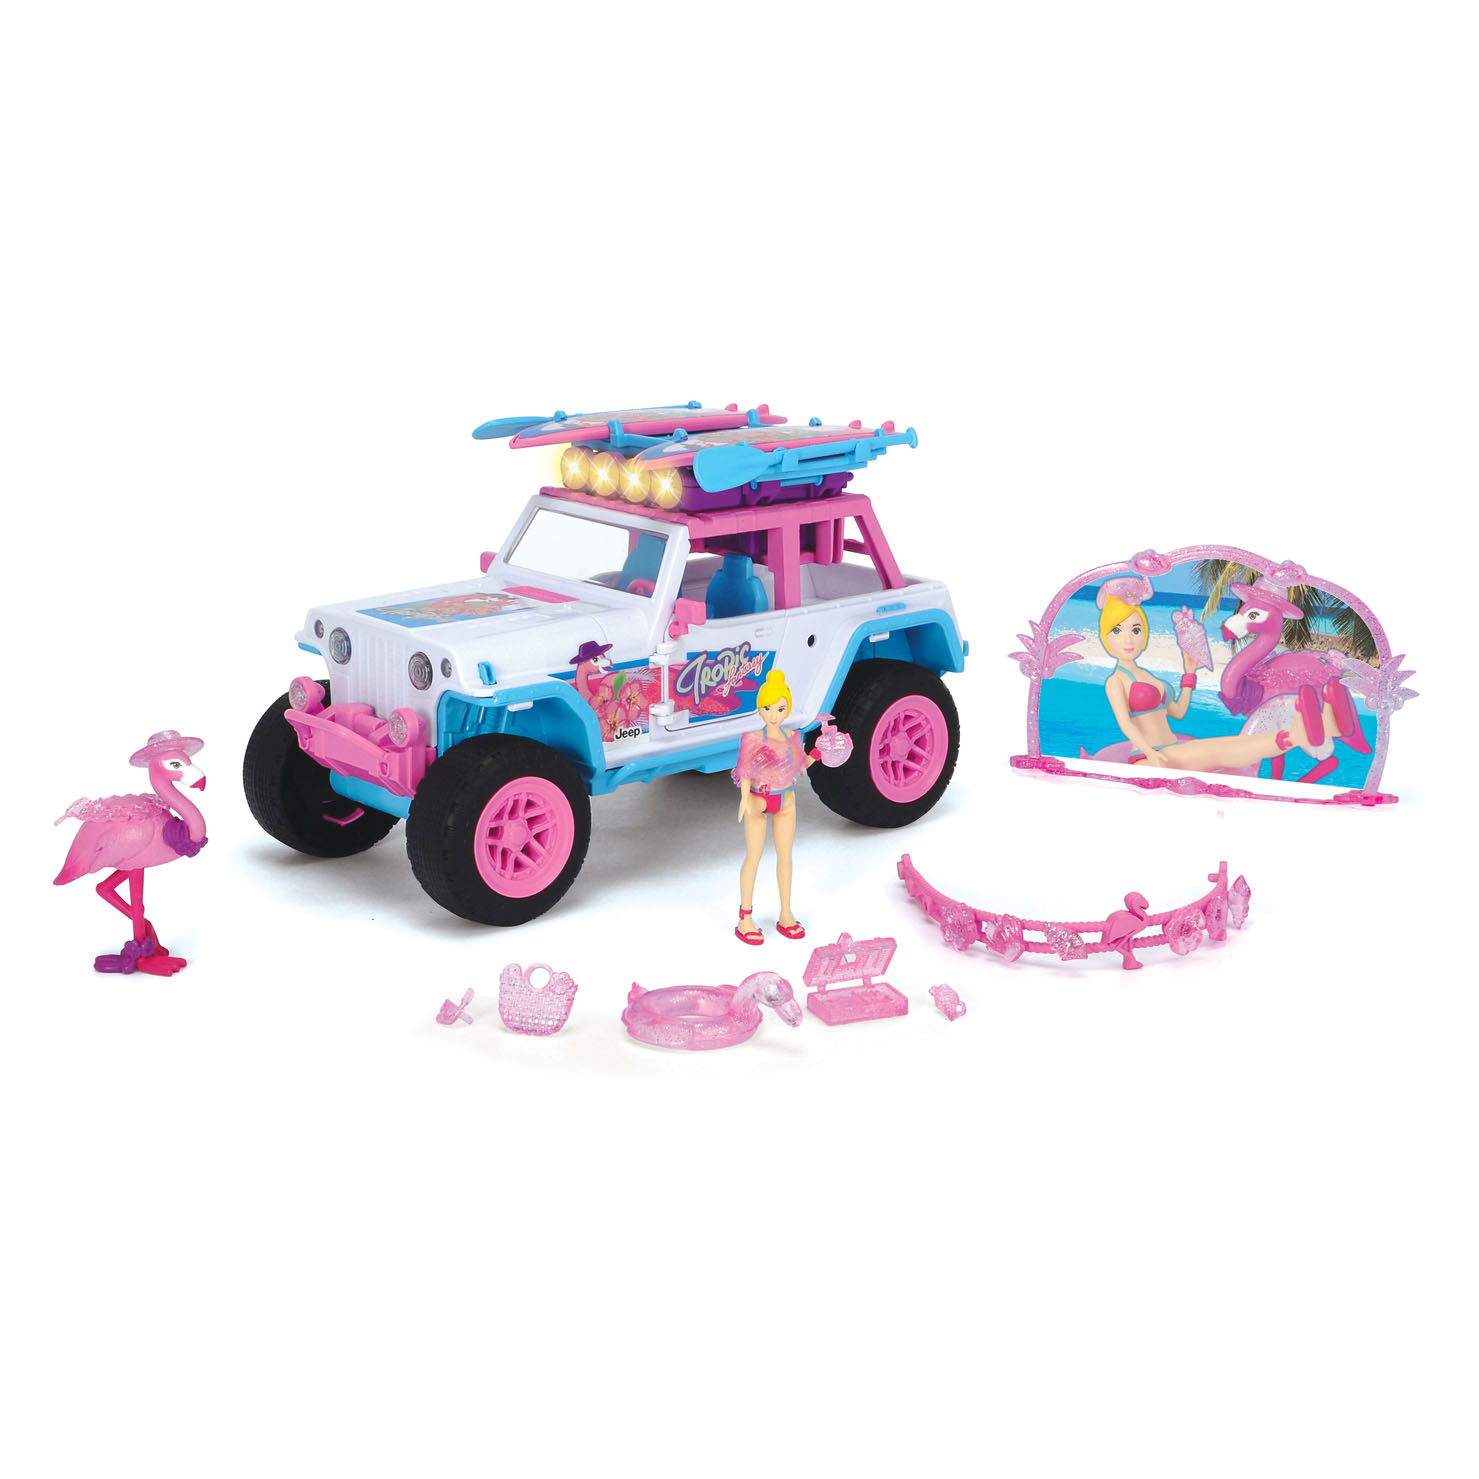 Dickie Flamingo Jeep met Speelfiguur